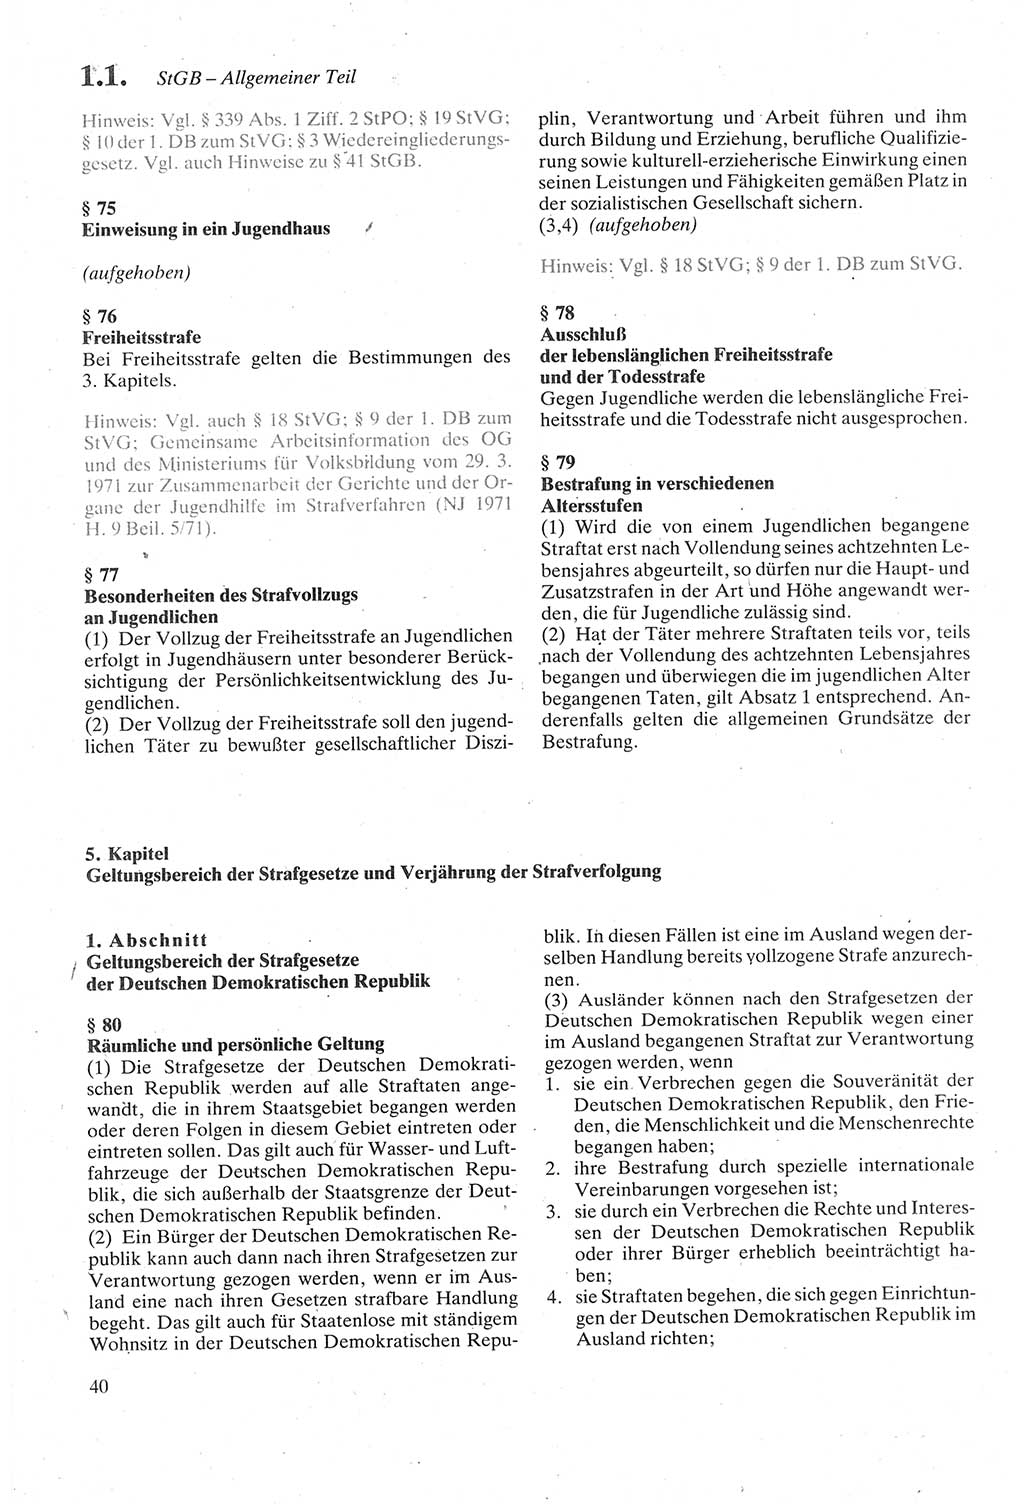 Strafgesetzbuch (StGB) der Deutschen Demokratischen Republik (DDR) sowie angrenzende Gesetze und Bestimmungen 1979, Seite 40 (StGB DDR Ges. Best. 1979, S. 40)